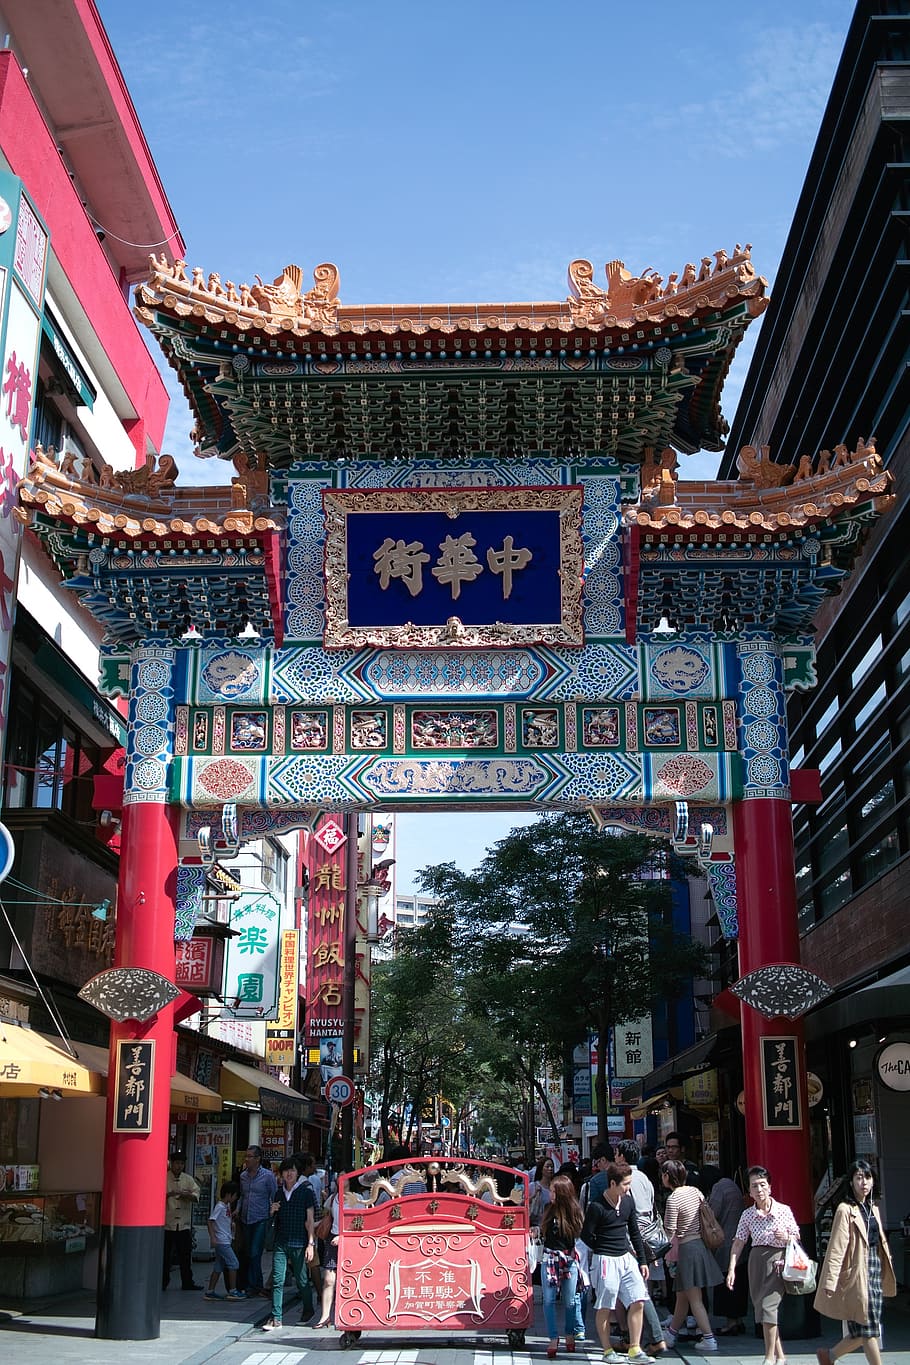 men, women, standing, building, daytime, chinatown, tourist, neighborly gate, yokohama, china town